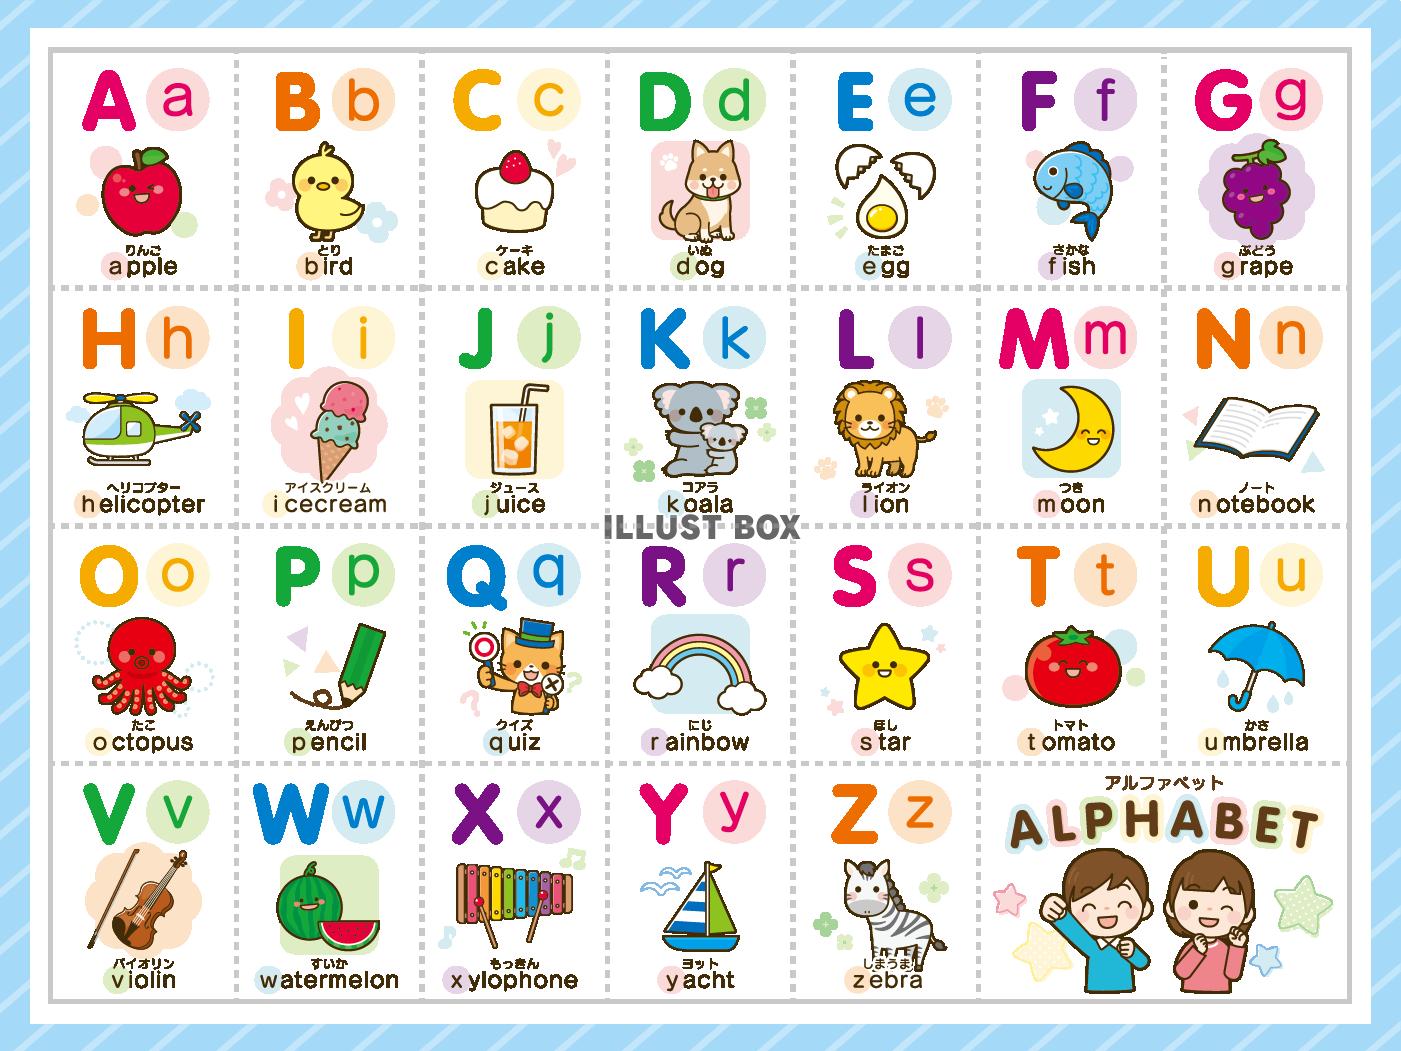 アルファベット表・ABC表